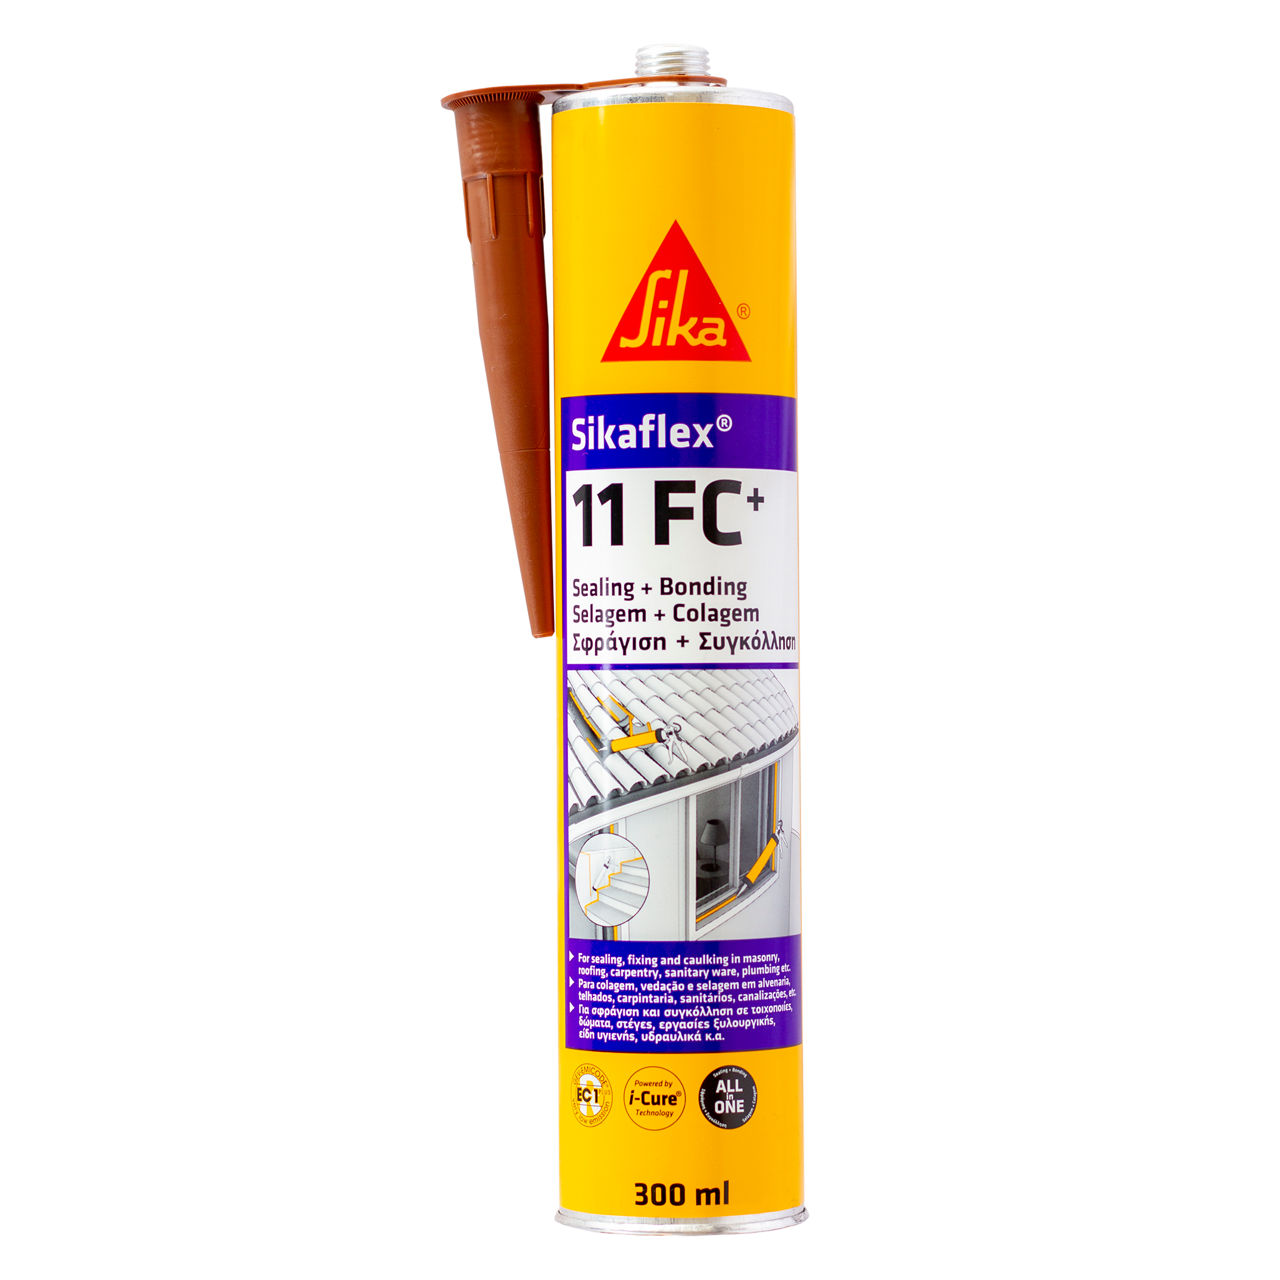 Sika Nigeria - Sikaflex® 11 FC is an elastic joint sealant